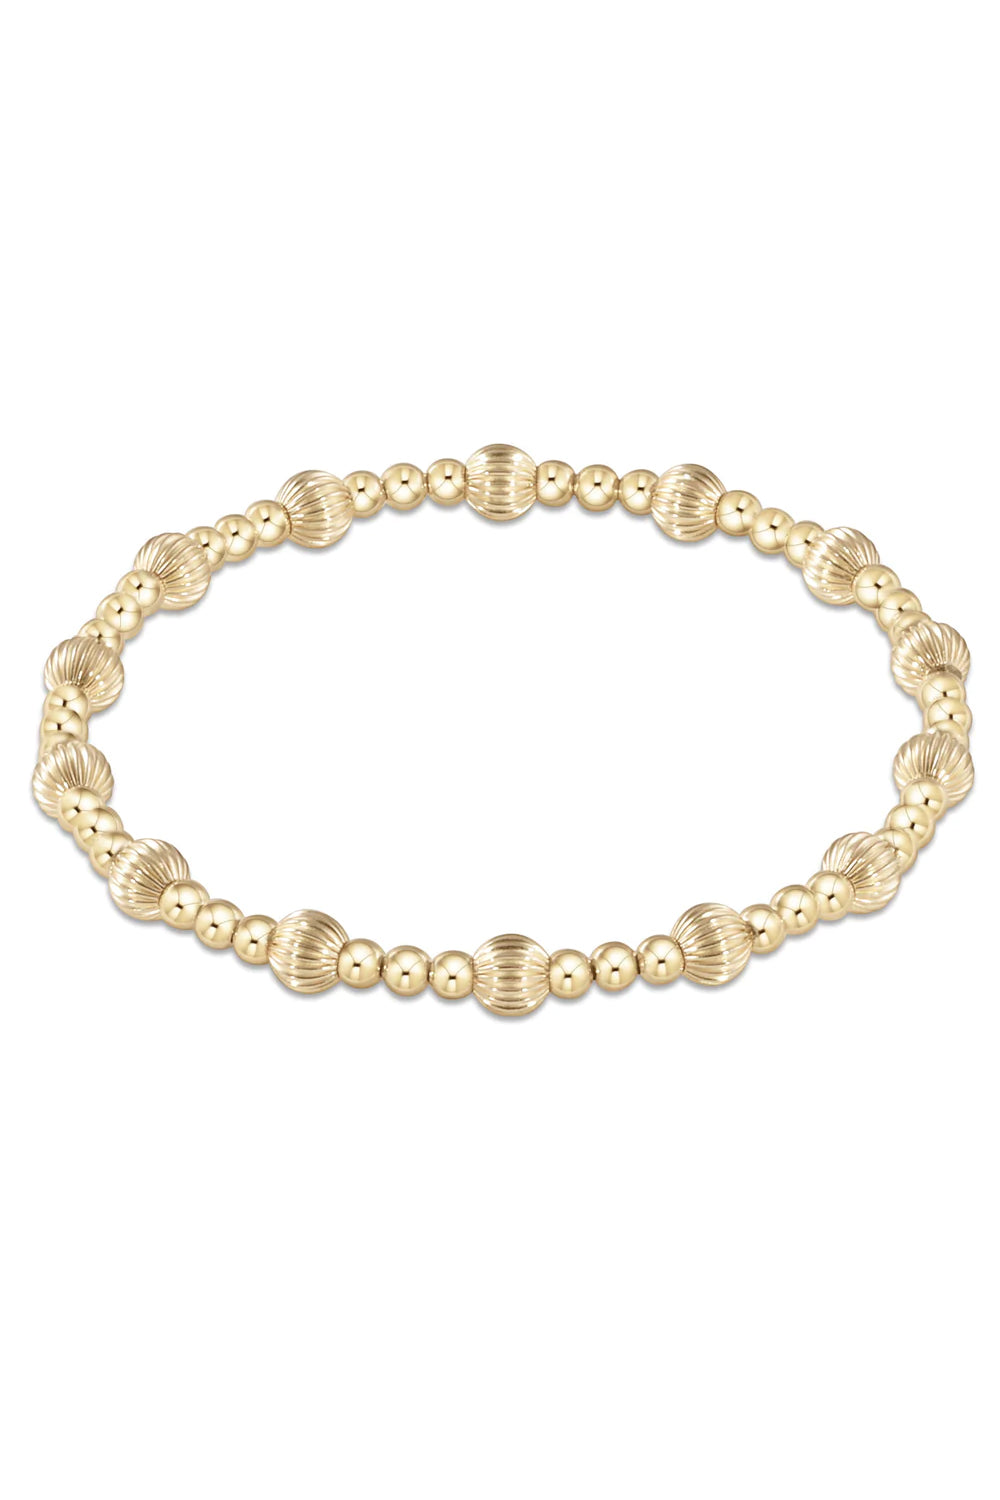 enewton: Dignity Sincerity Pattern 5mm Bead Bracelet - Gold | Makk Fashions